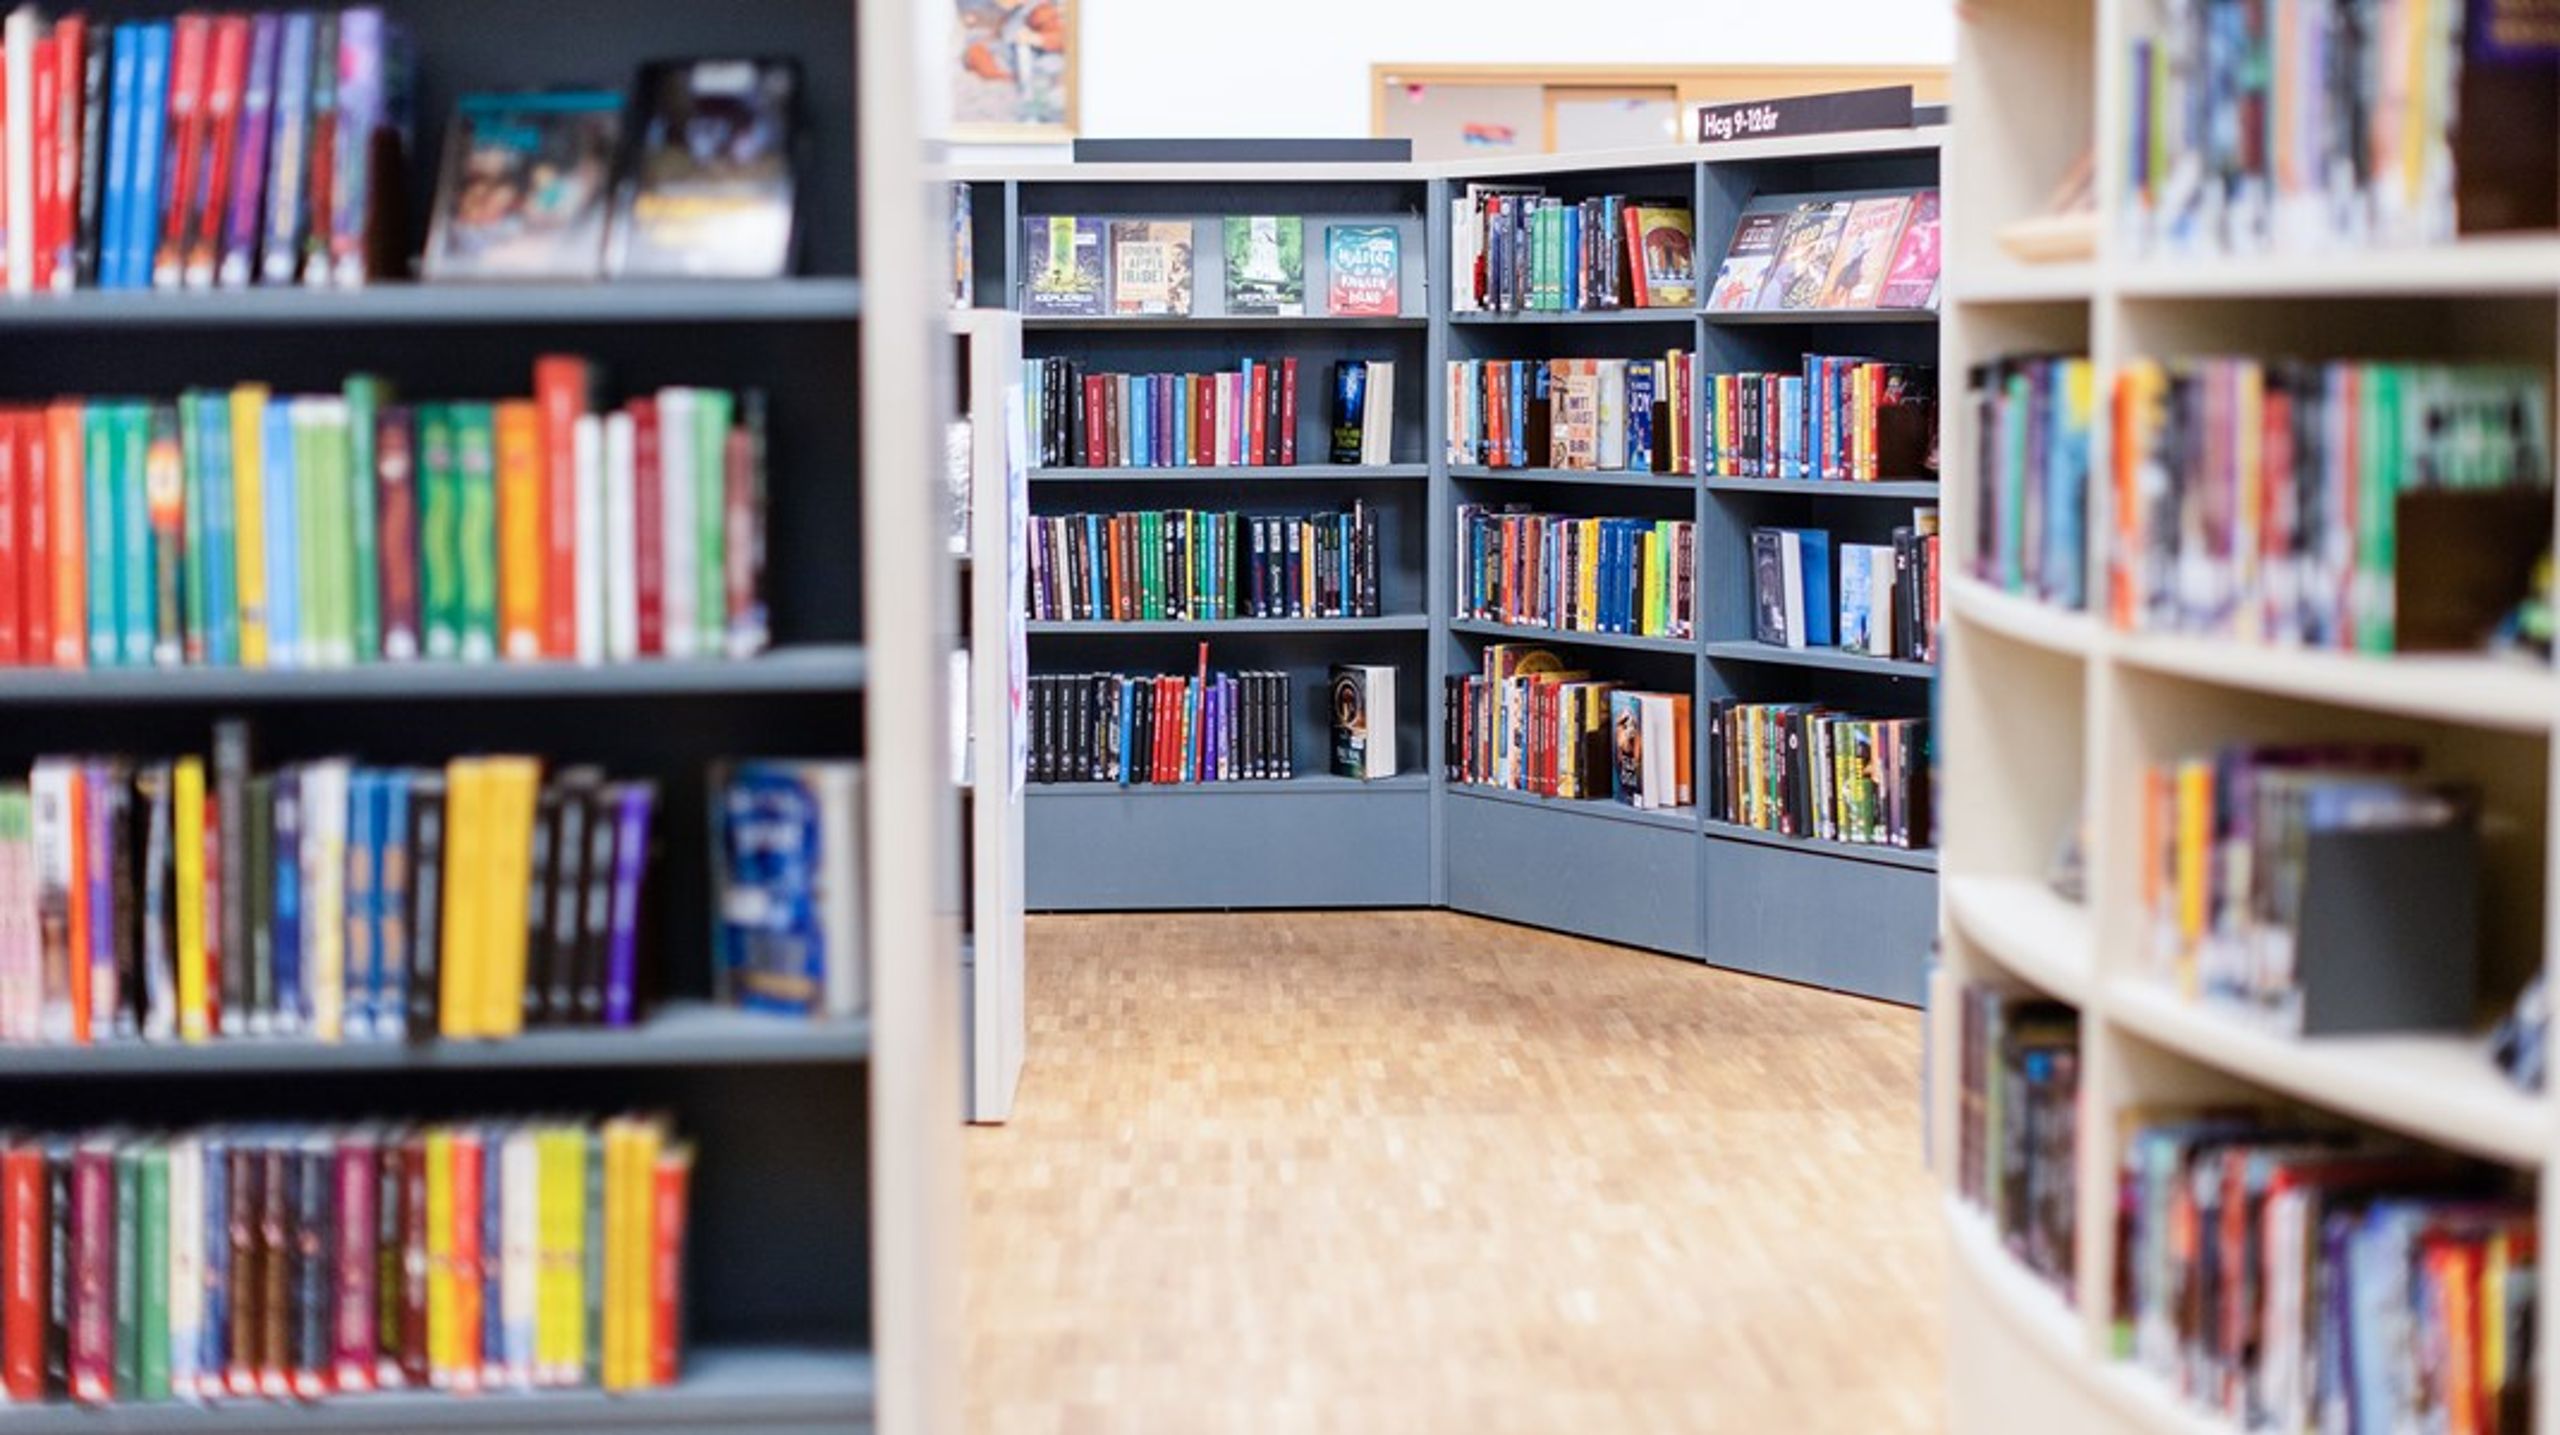 Tillgången till ett välsorterat bibliotek, med generösa öppettider och kompetent personal, är avgörande om vi ska kunna vända den pågående läskrisen, skriver debattören.